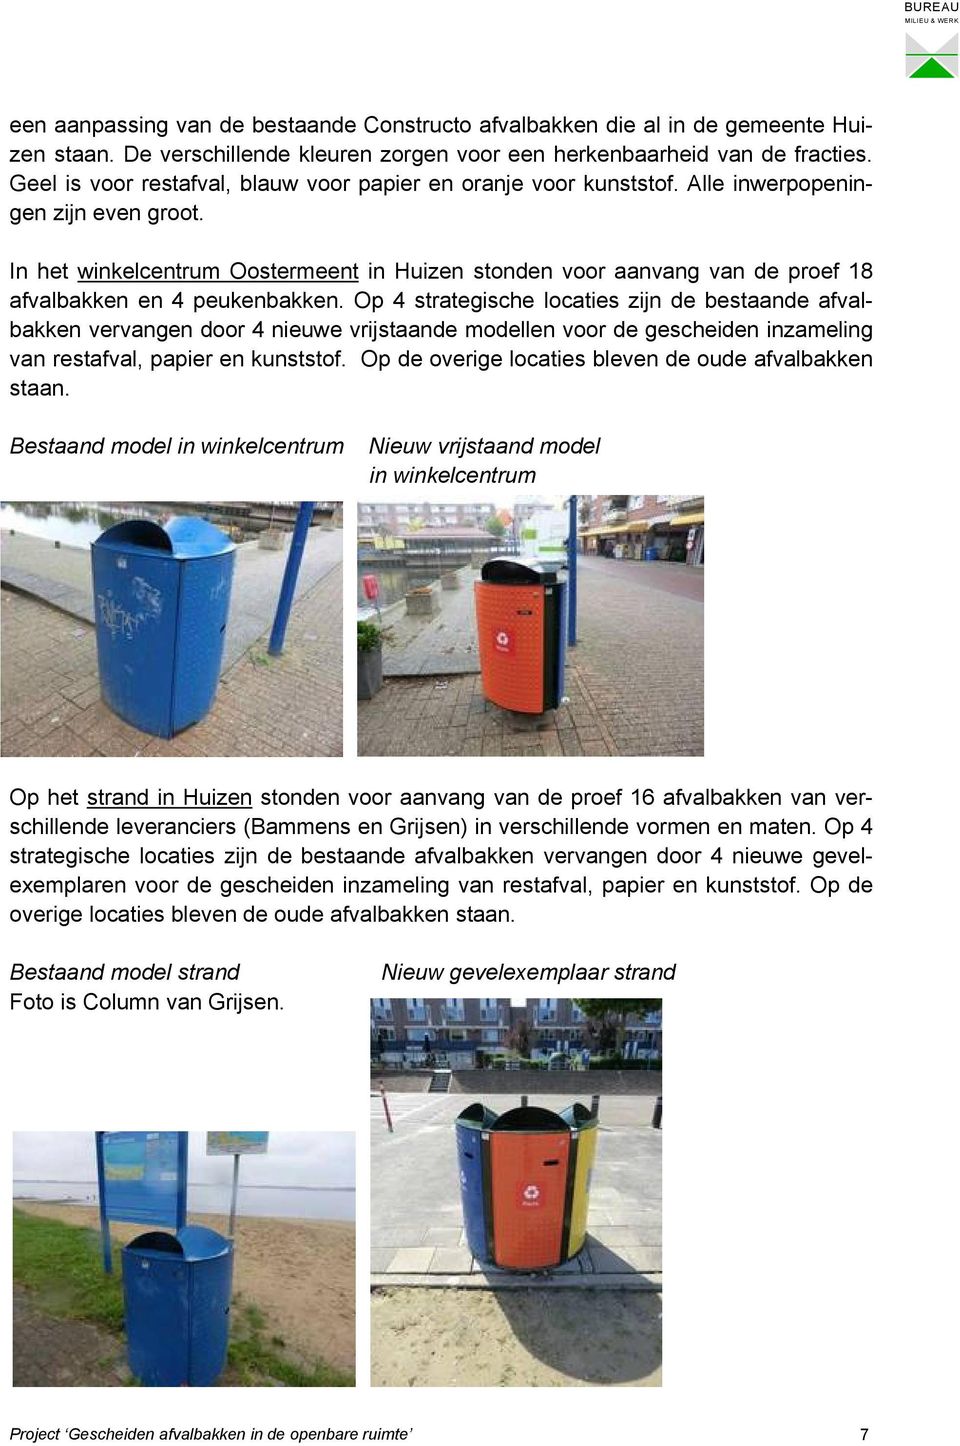 In het winkelcentrum Oostermeent in Huizen stonden voor aanvang van de proef 18 afvalbakken en 4 peukenbakken.